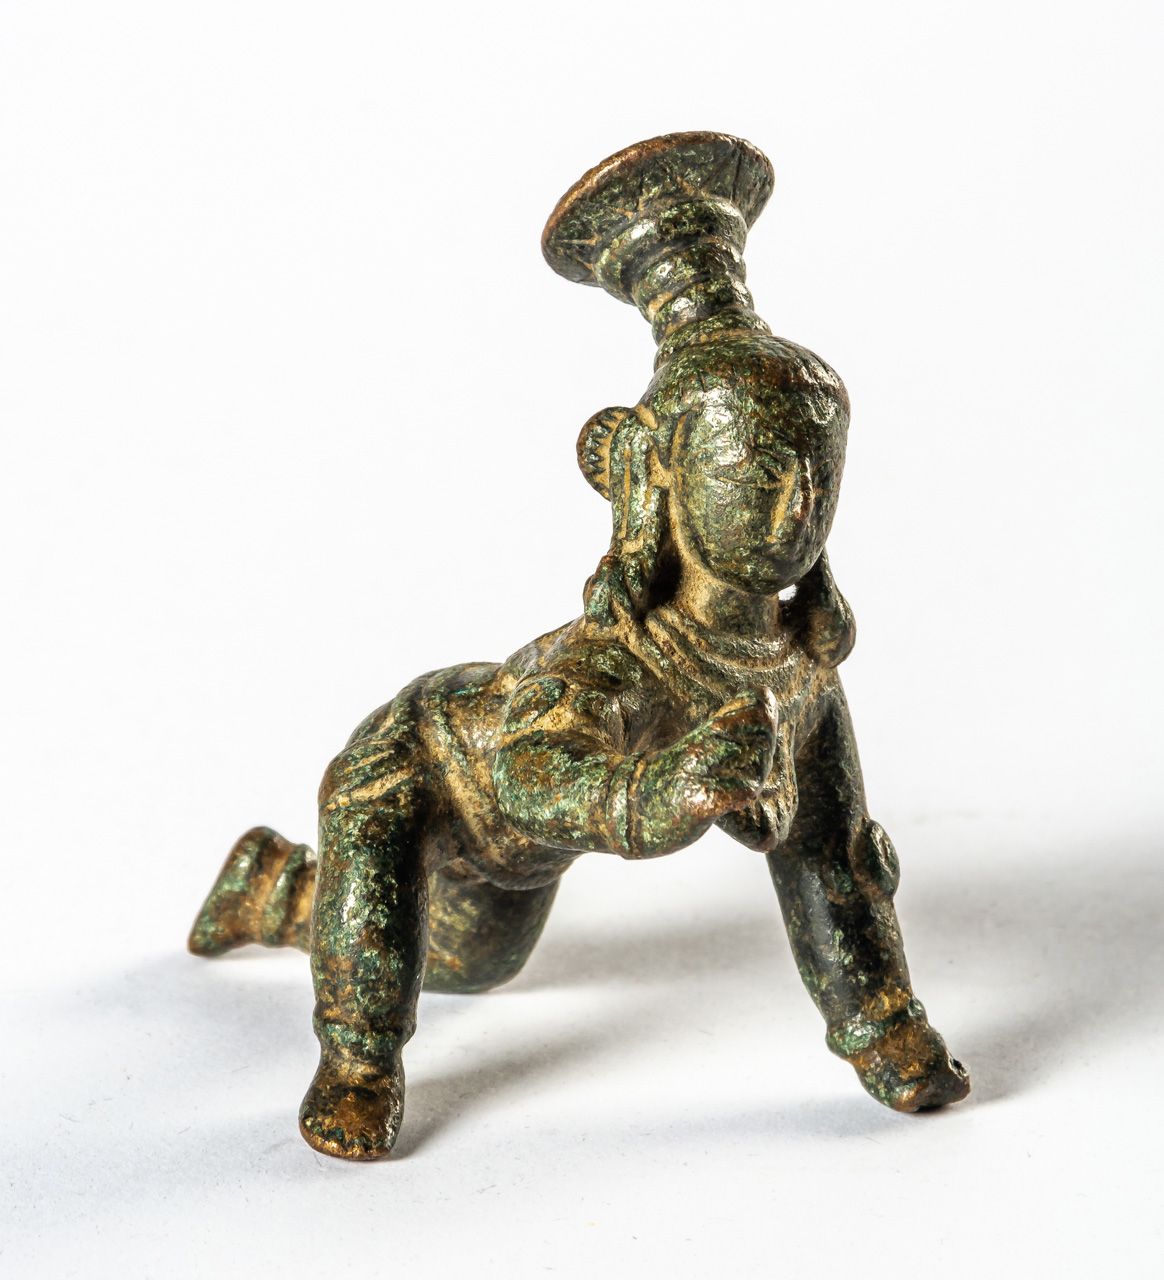 BABY KRISHNA India, bronce, probablemente alrededor de 1900

7 x 5,5 x 5 cm




&hellip;